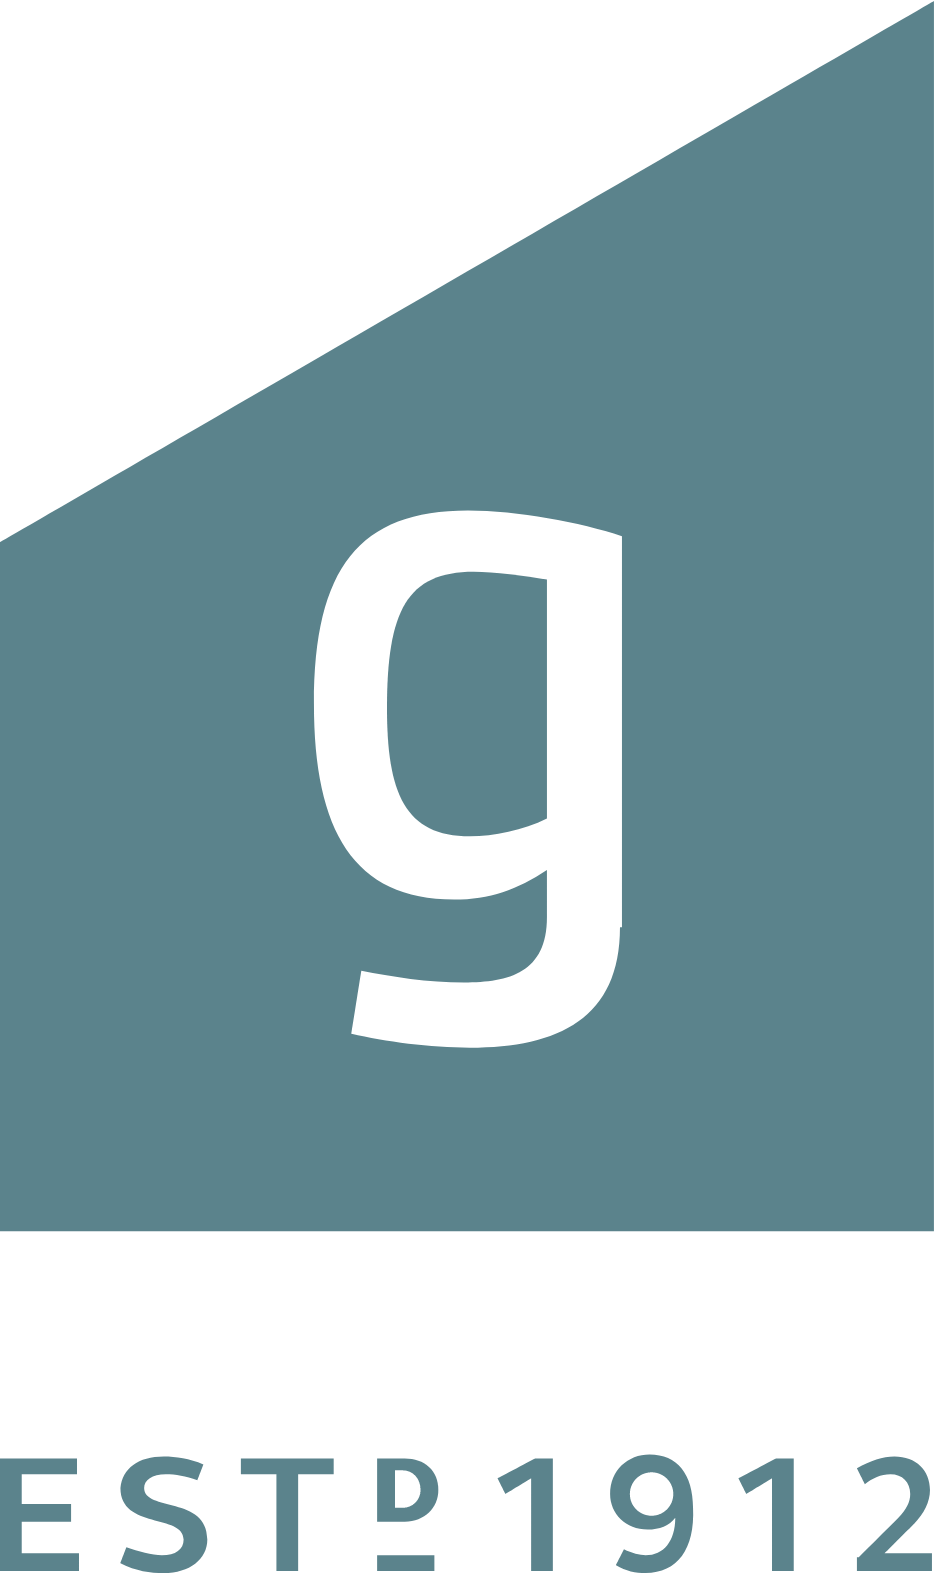 Grainger plc logo large (transparent PNG)